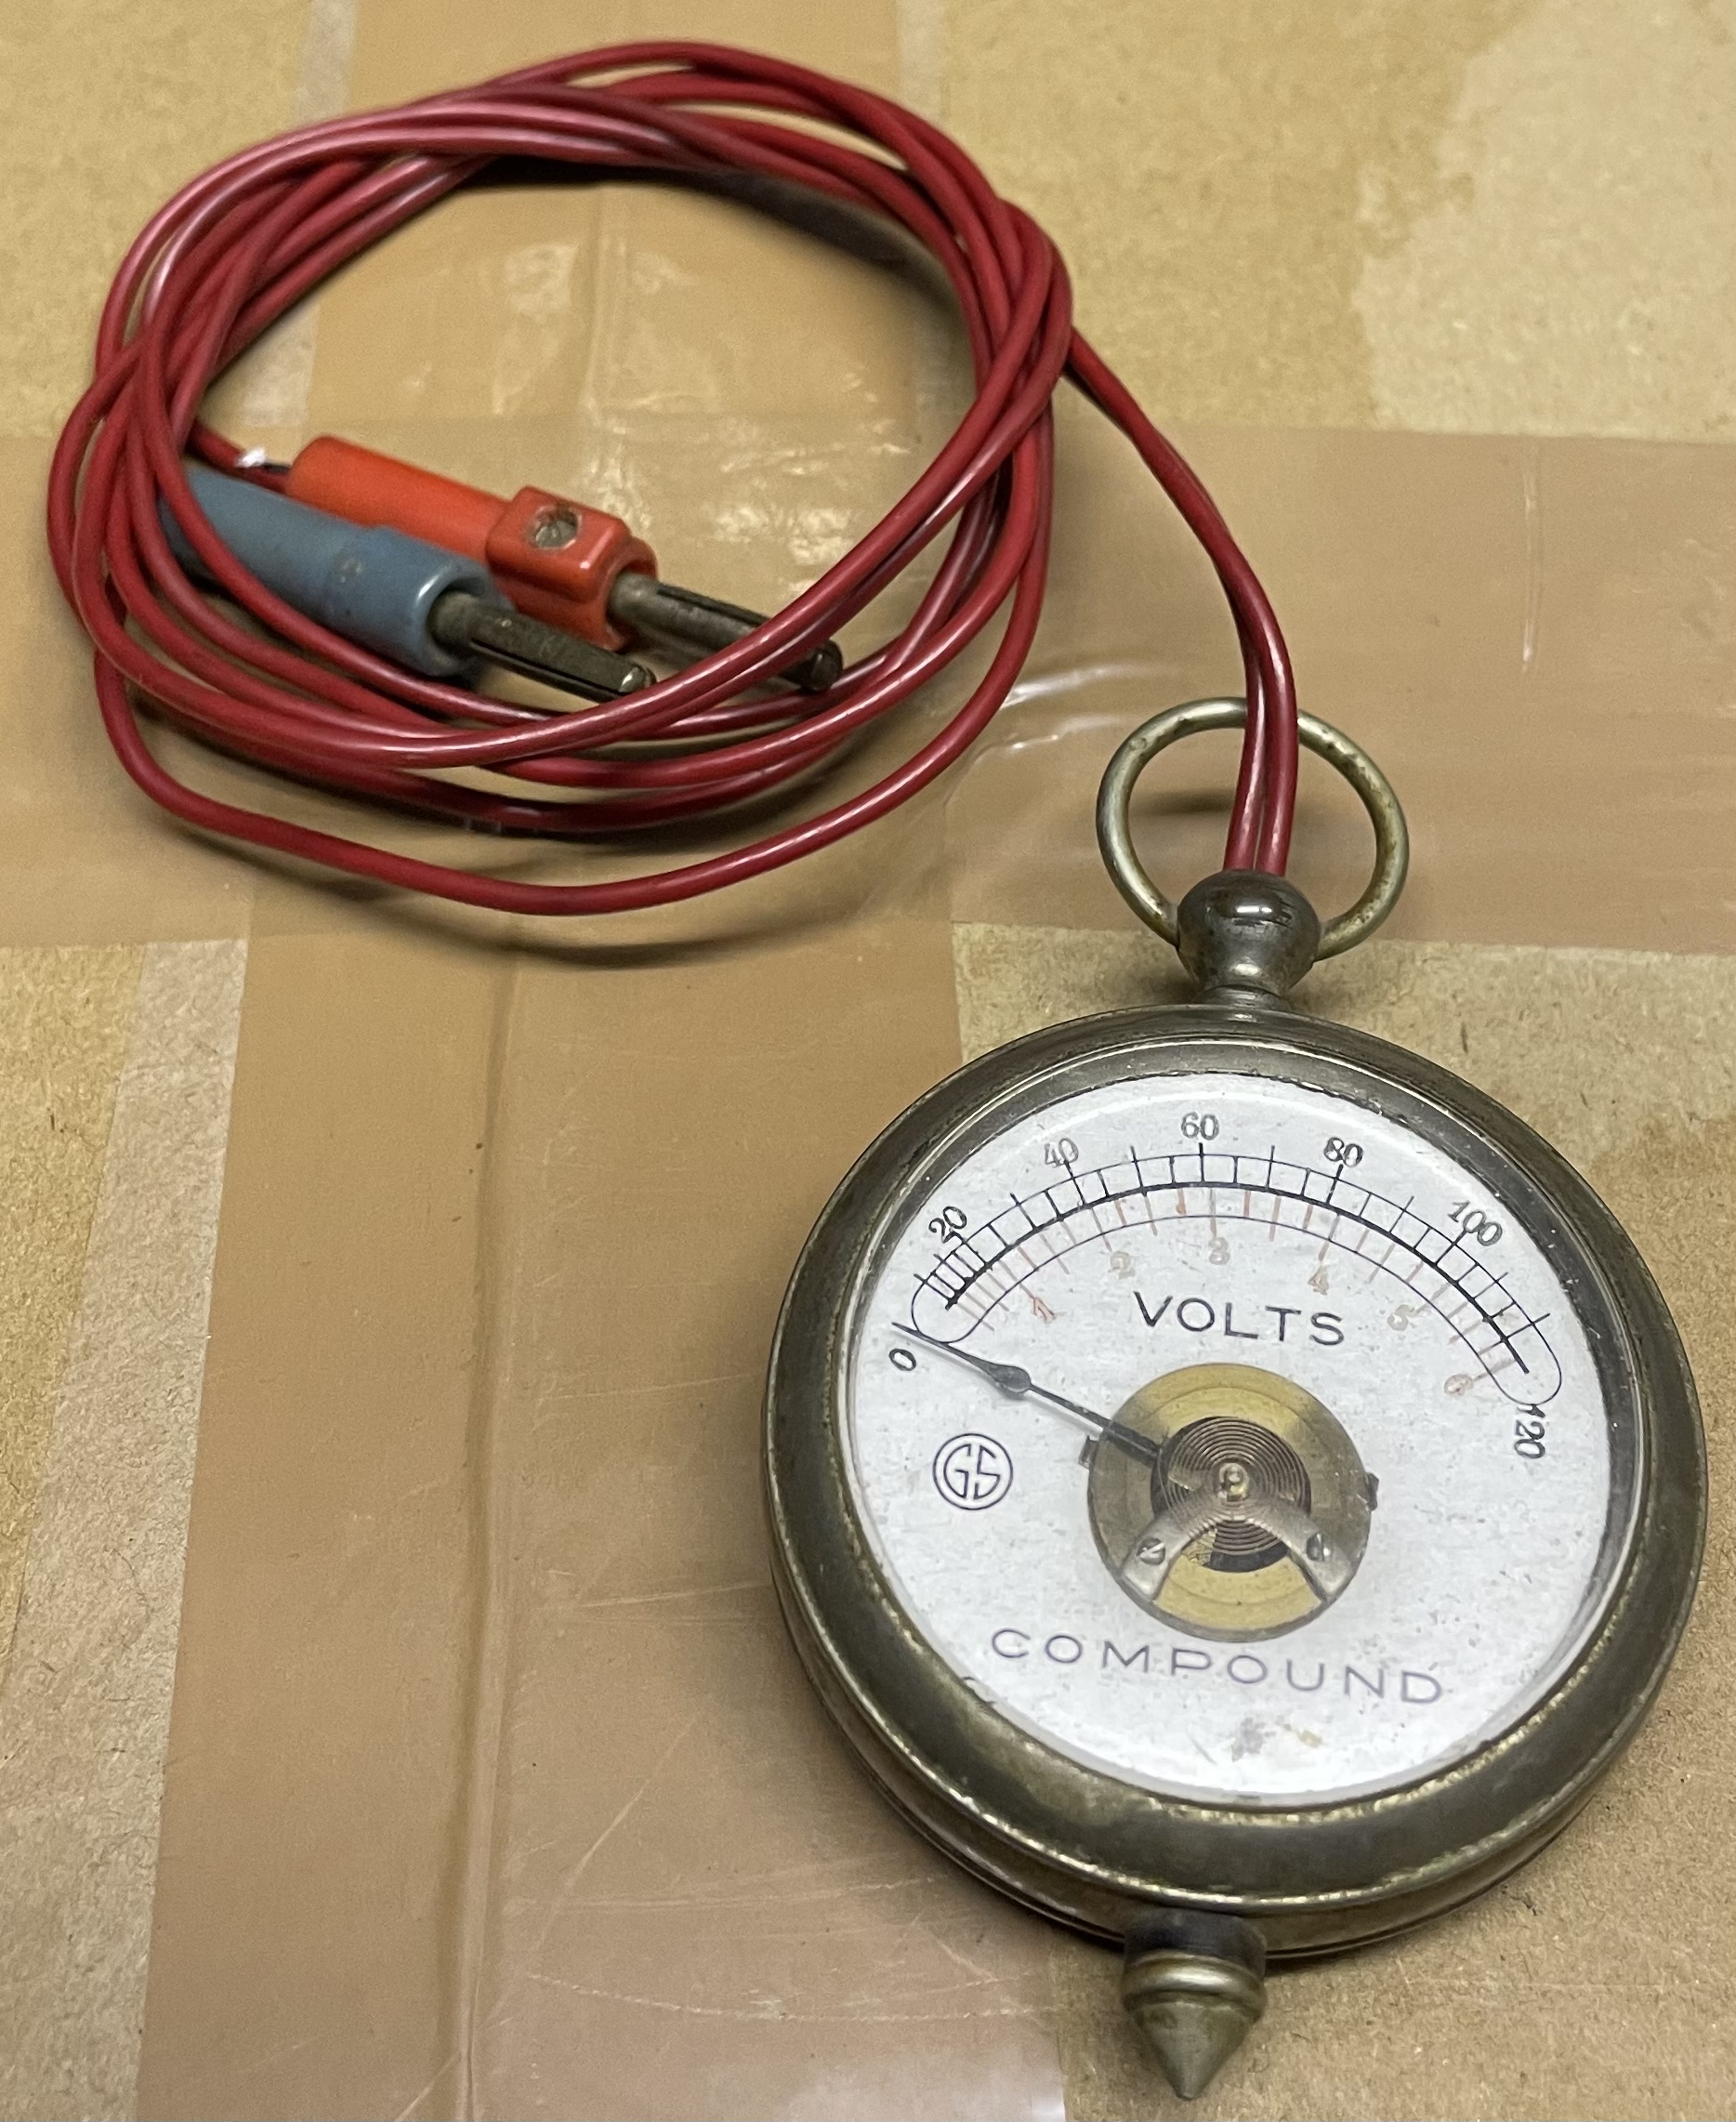 Taschenvoltmeter Compound GS